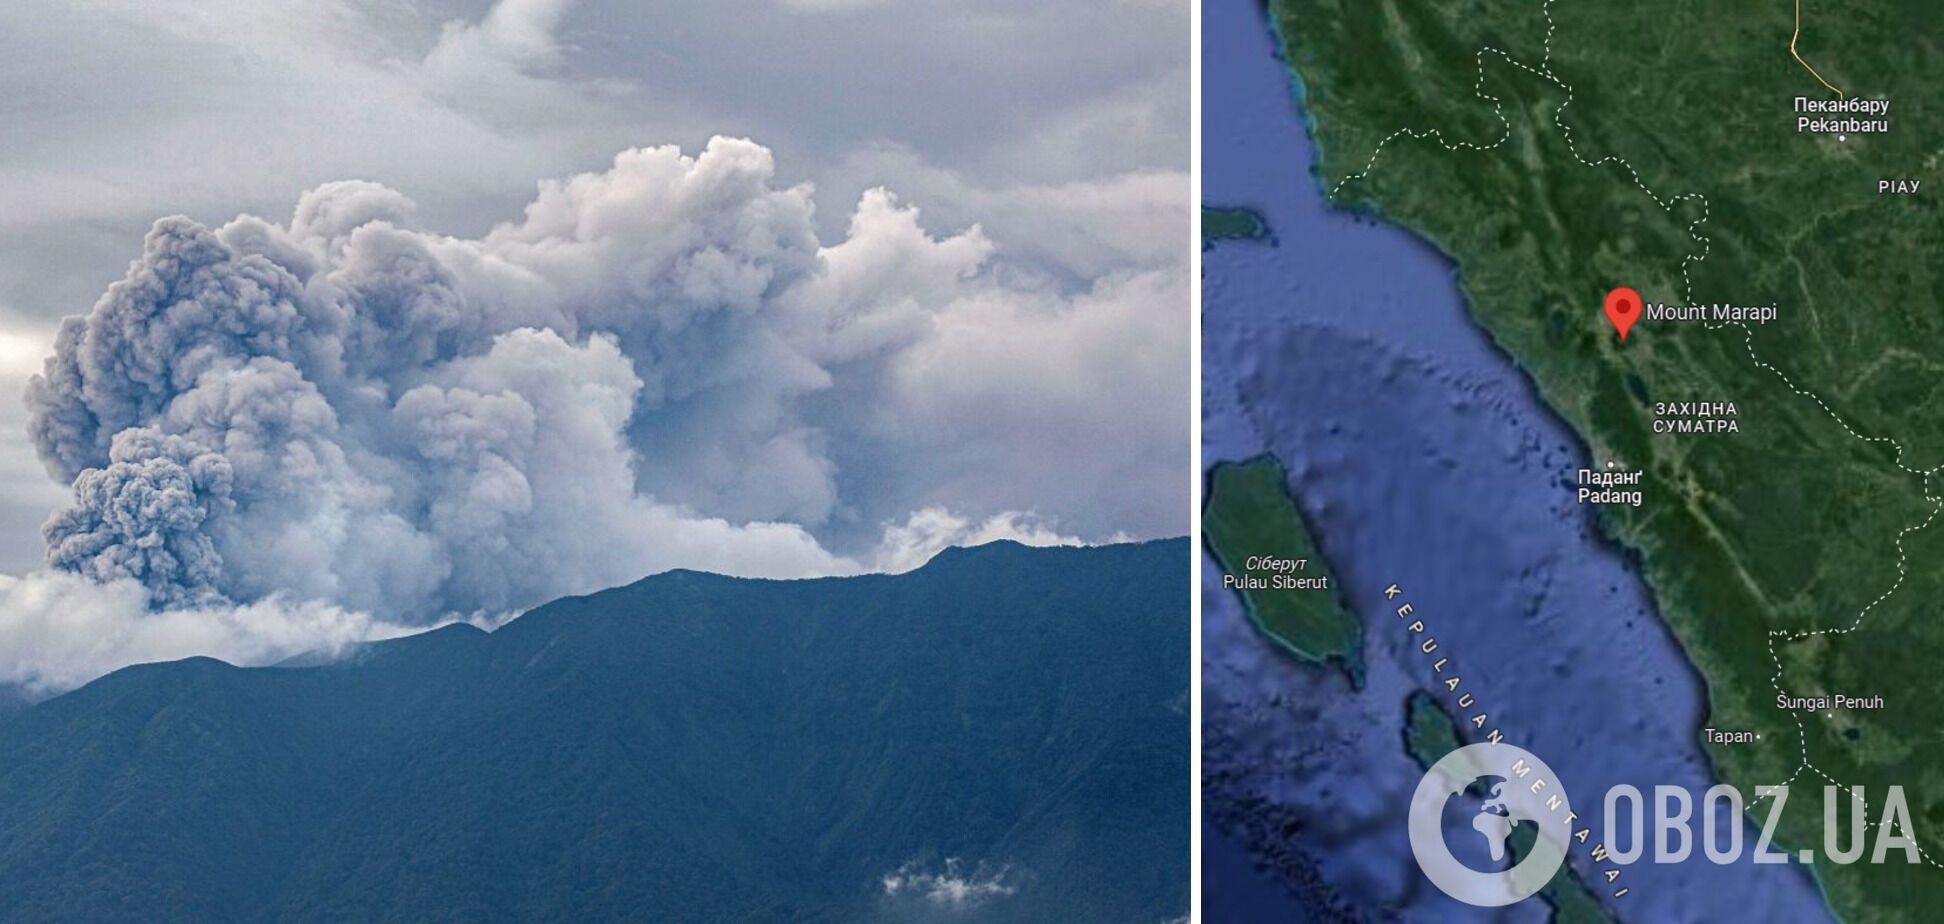 В Индонезии в результате извержения вулкана погибли 11 альпинистов, пепел накрыл несколько сел. Фото и видео